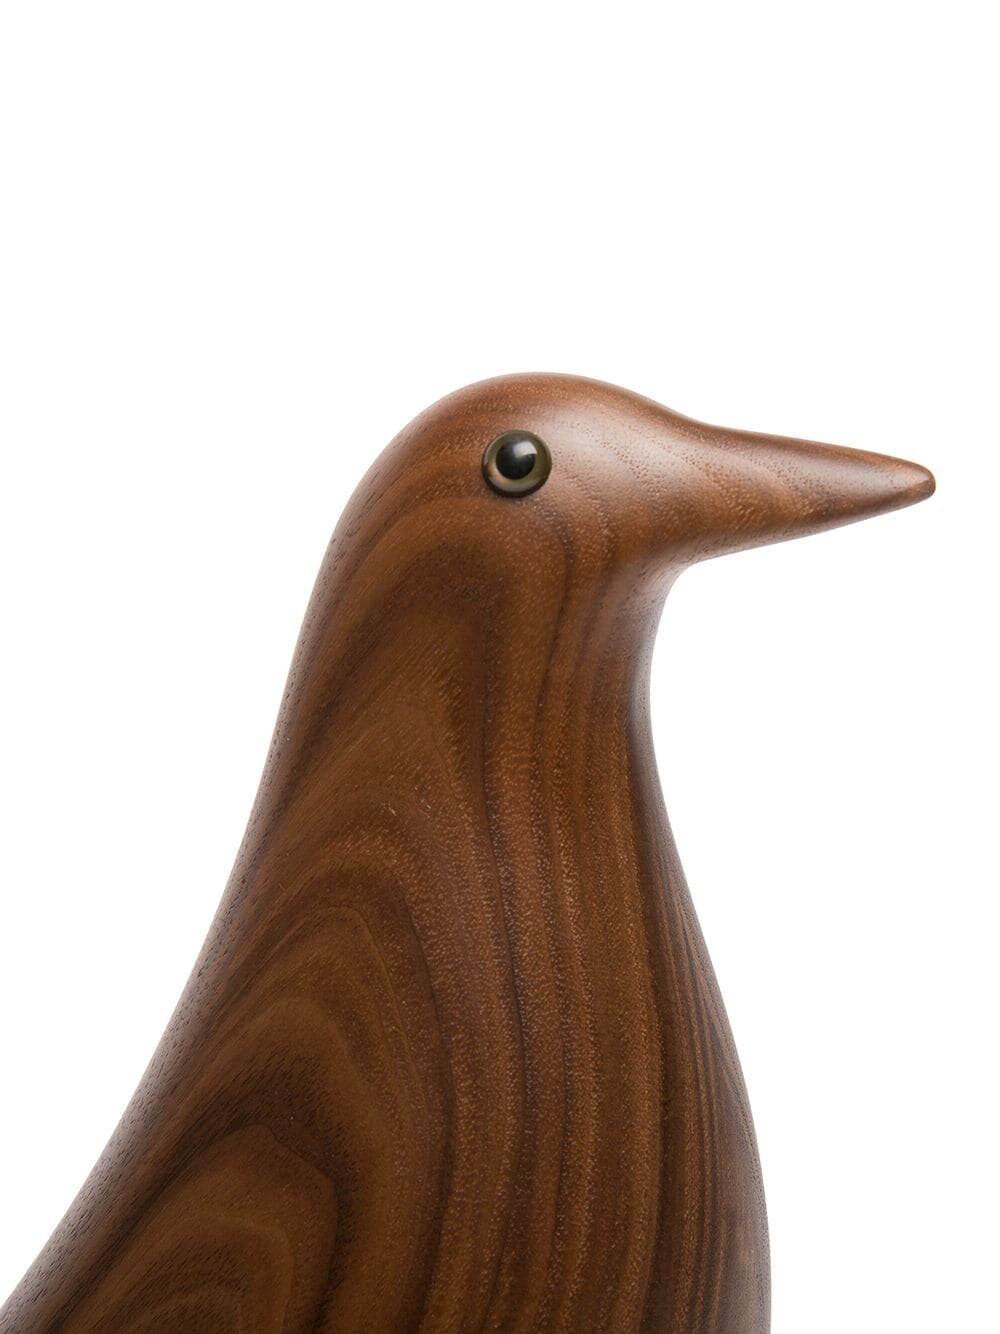 Коричневая фигурка Eames в форме птицы 21 272 руб.